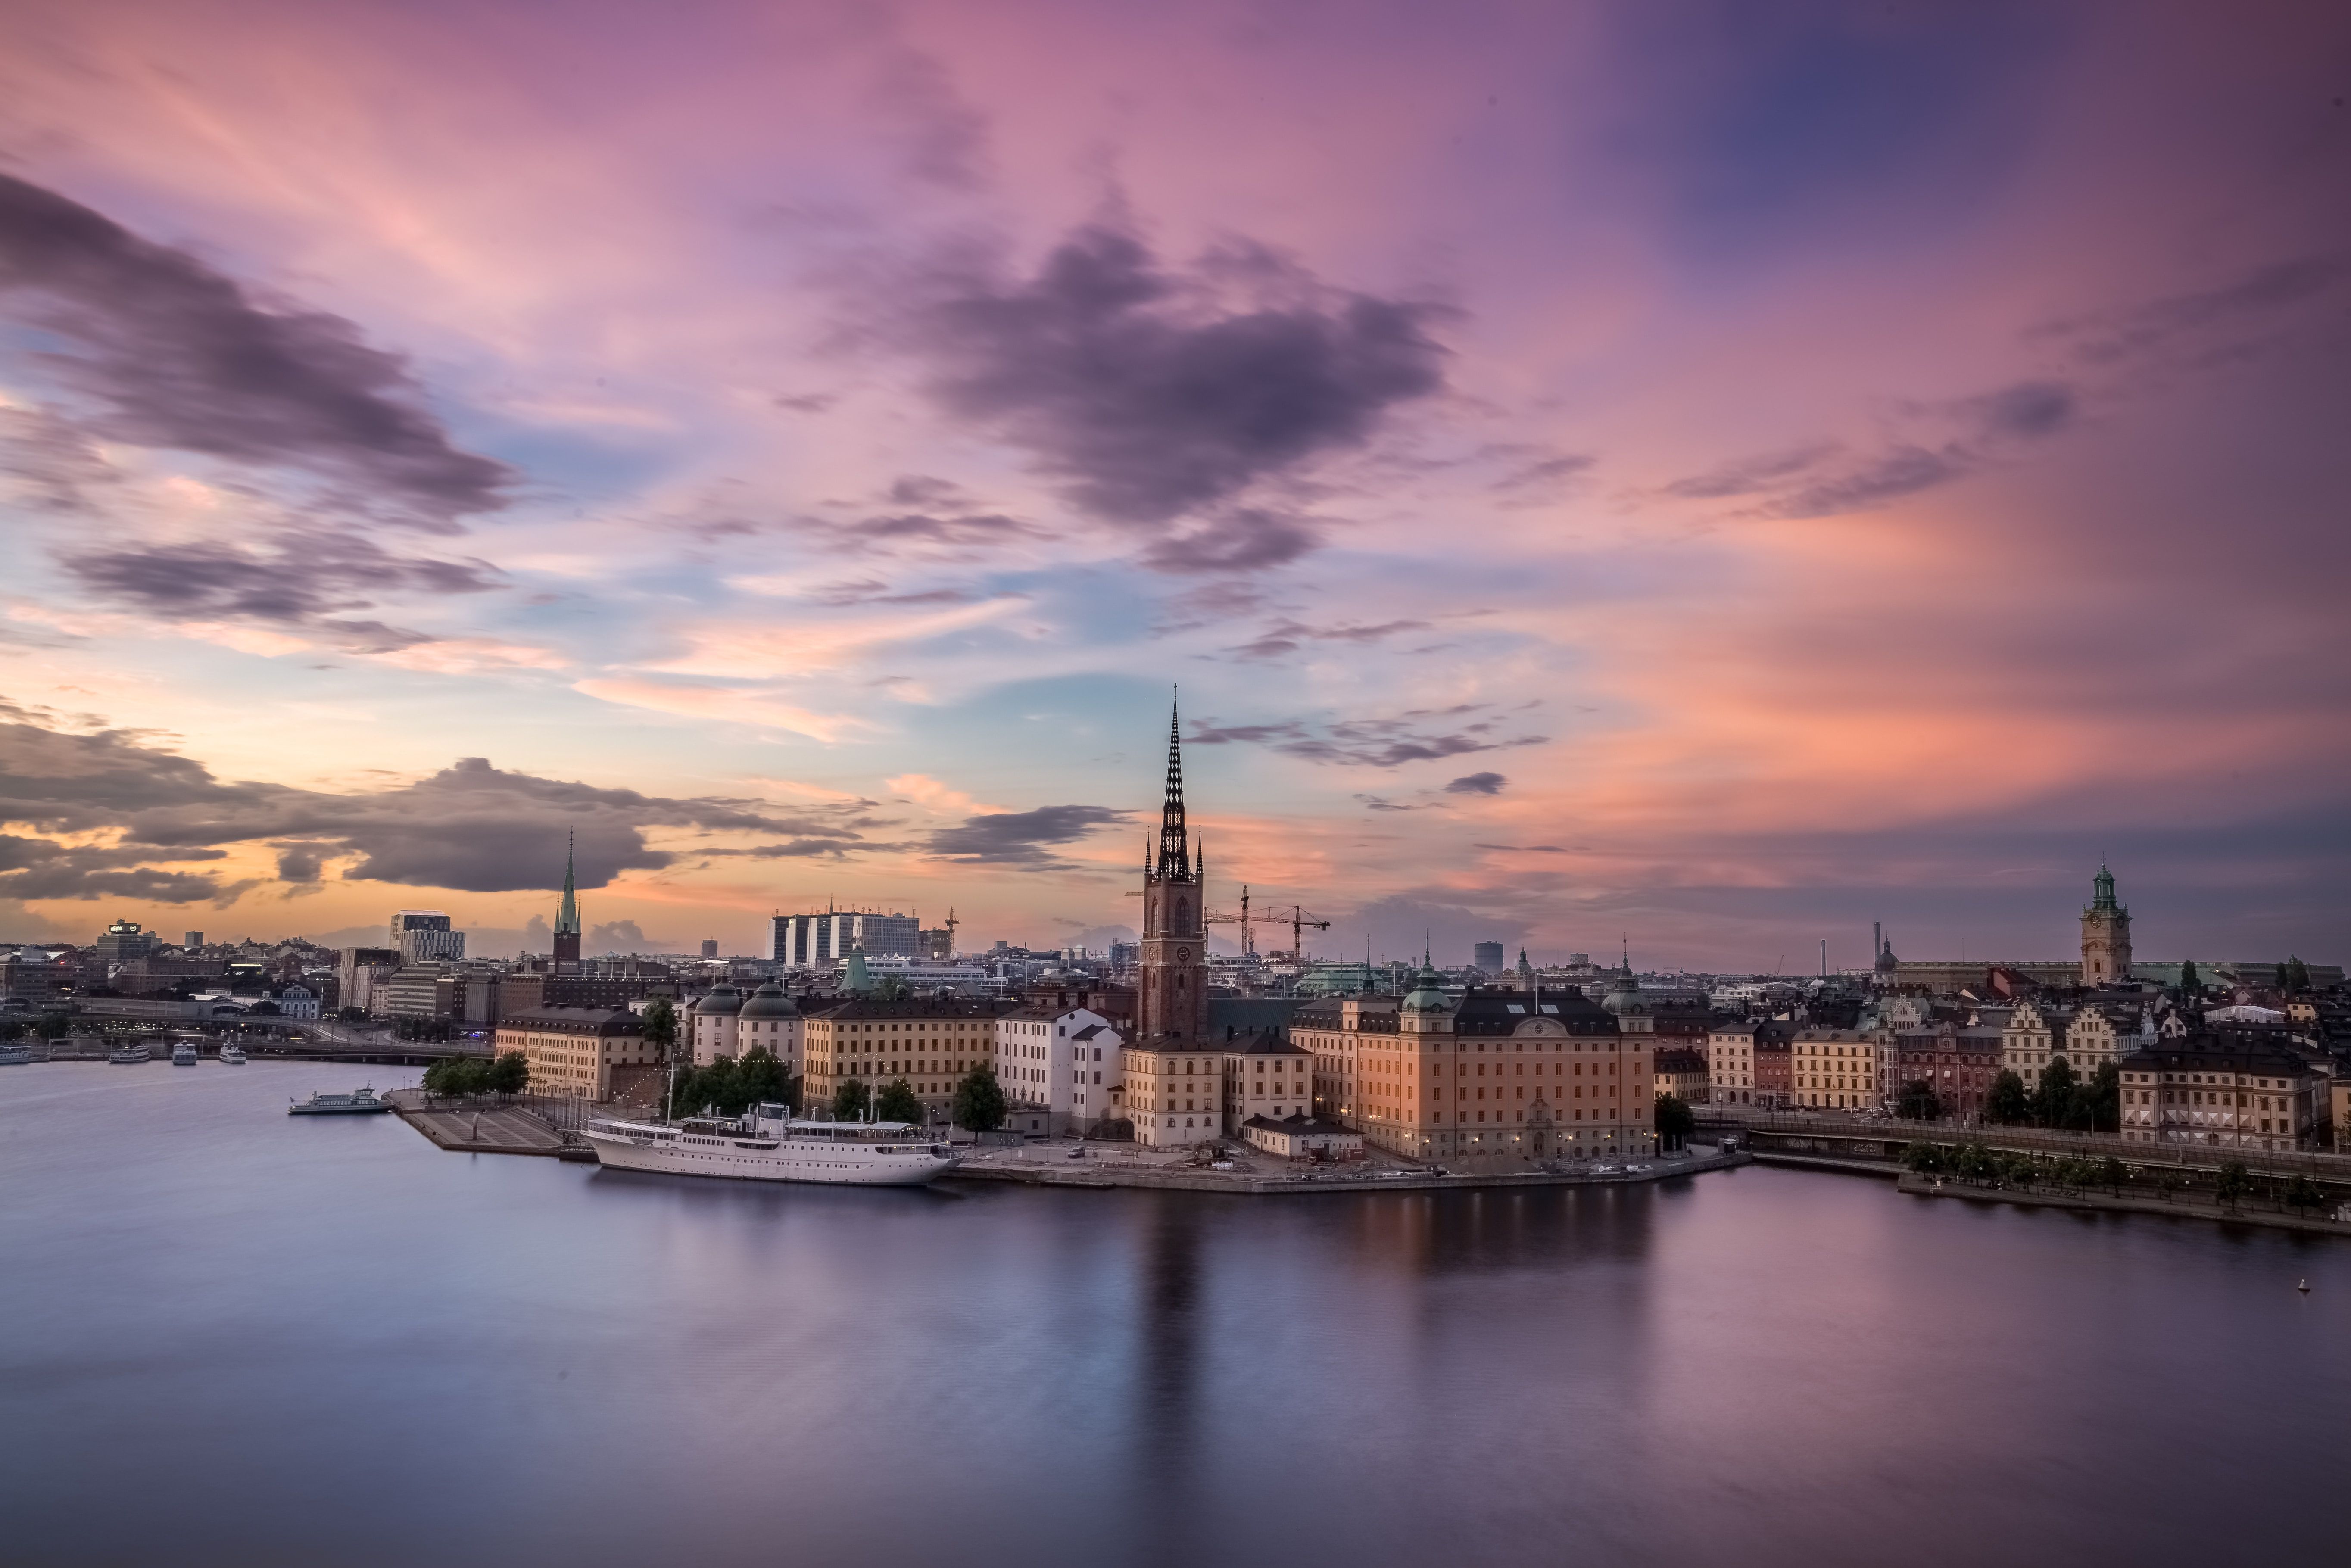 Stockholm Sweden at sunset